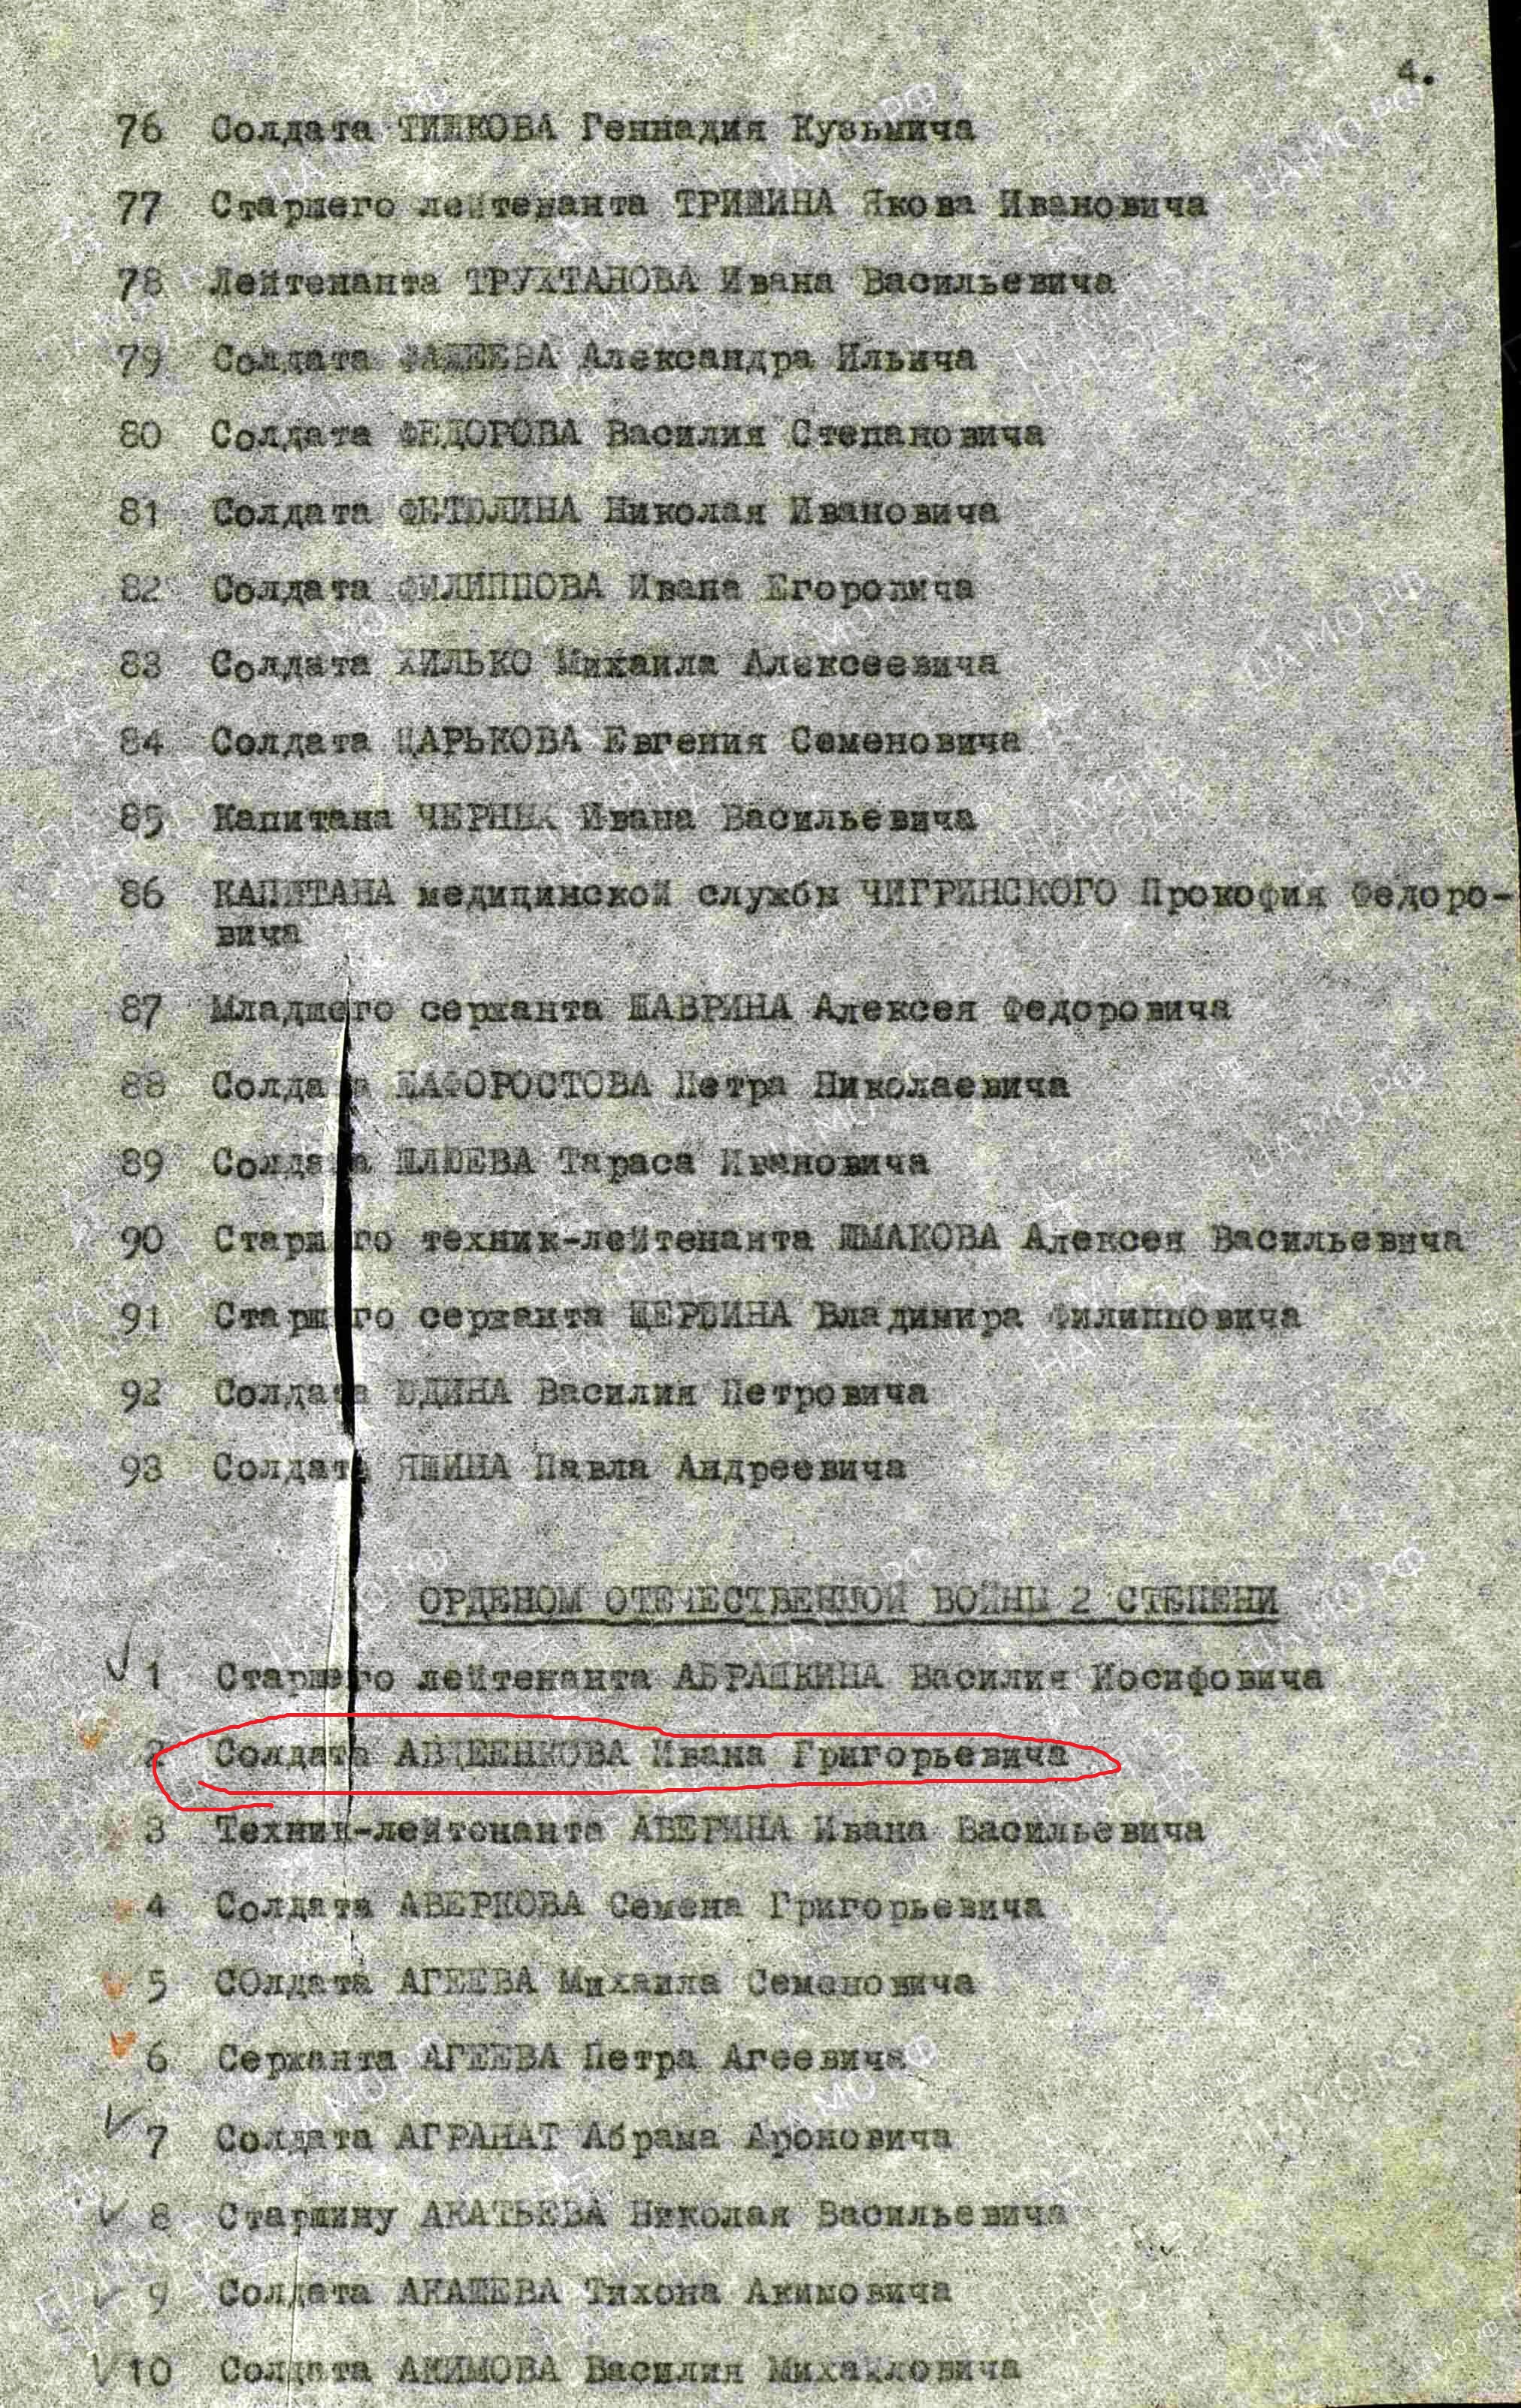 Авдеенков И.Г. Указ о награждении орденами и медалями (2 стр., архивная копия)